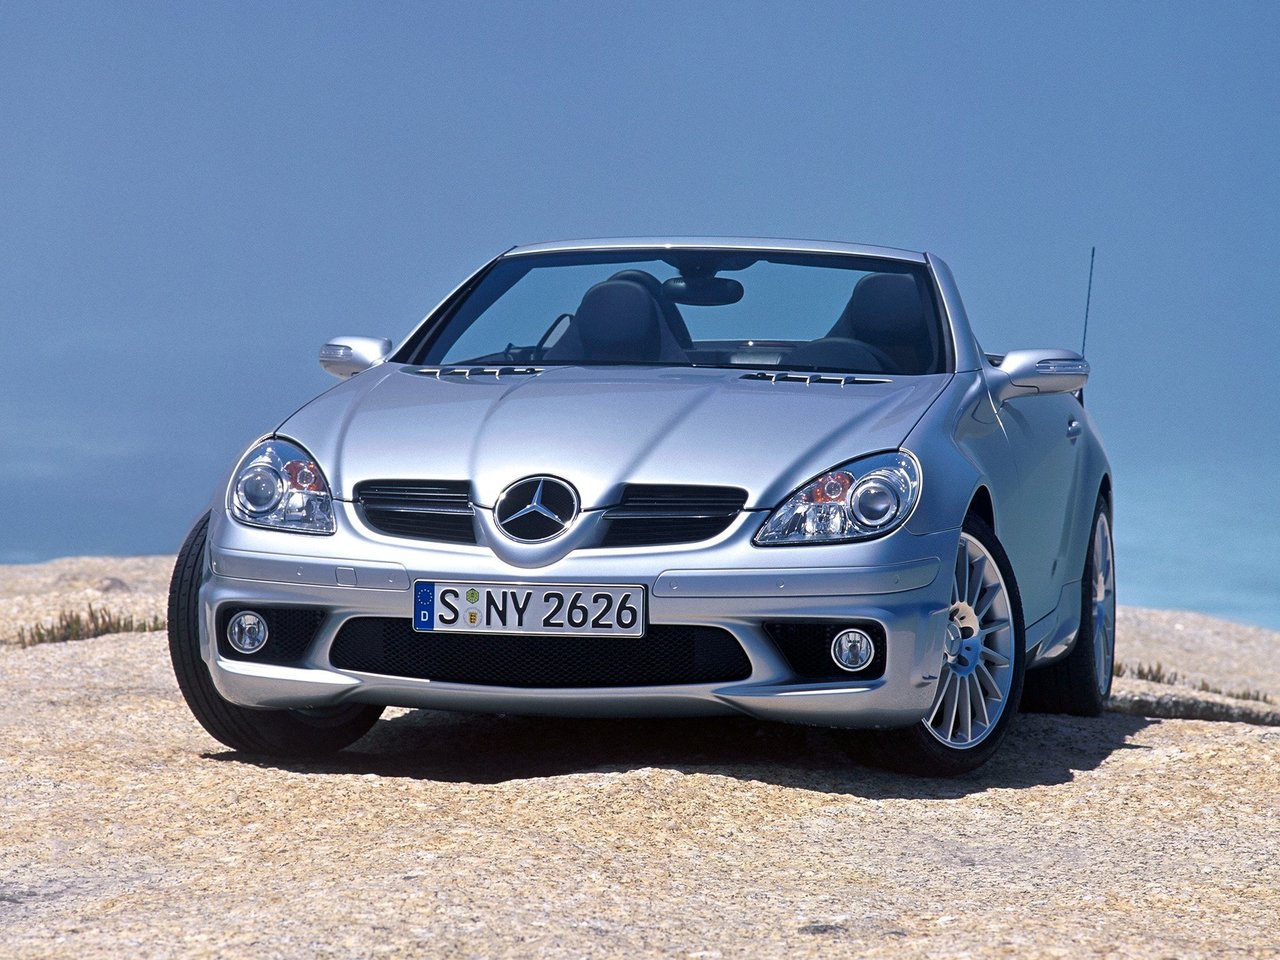 Расход газа одной комплектации родстера Mercedes-Benz SLK-klasse AMG. Разница стоимости заправки газом и бензином. Автономный пробег до и после установки ГБО.